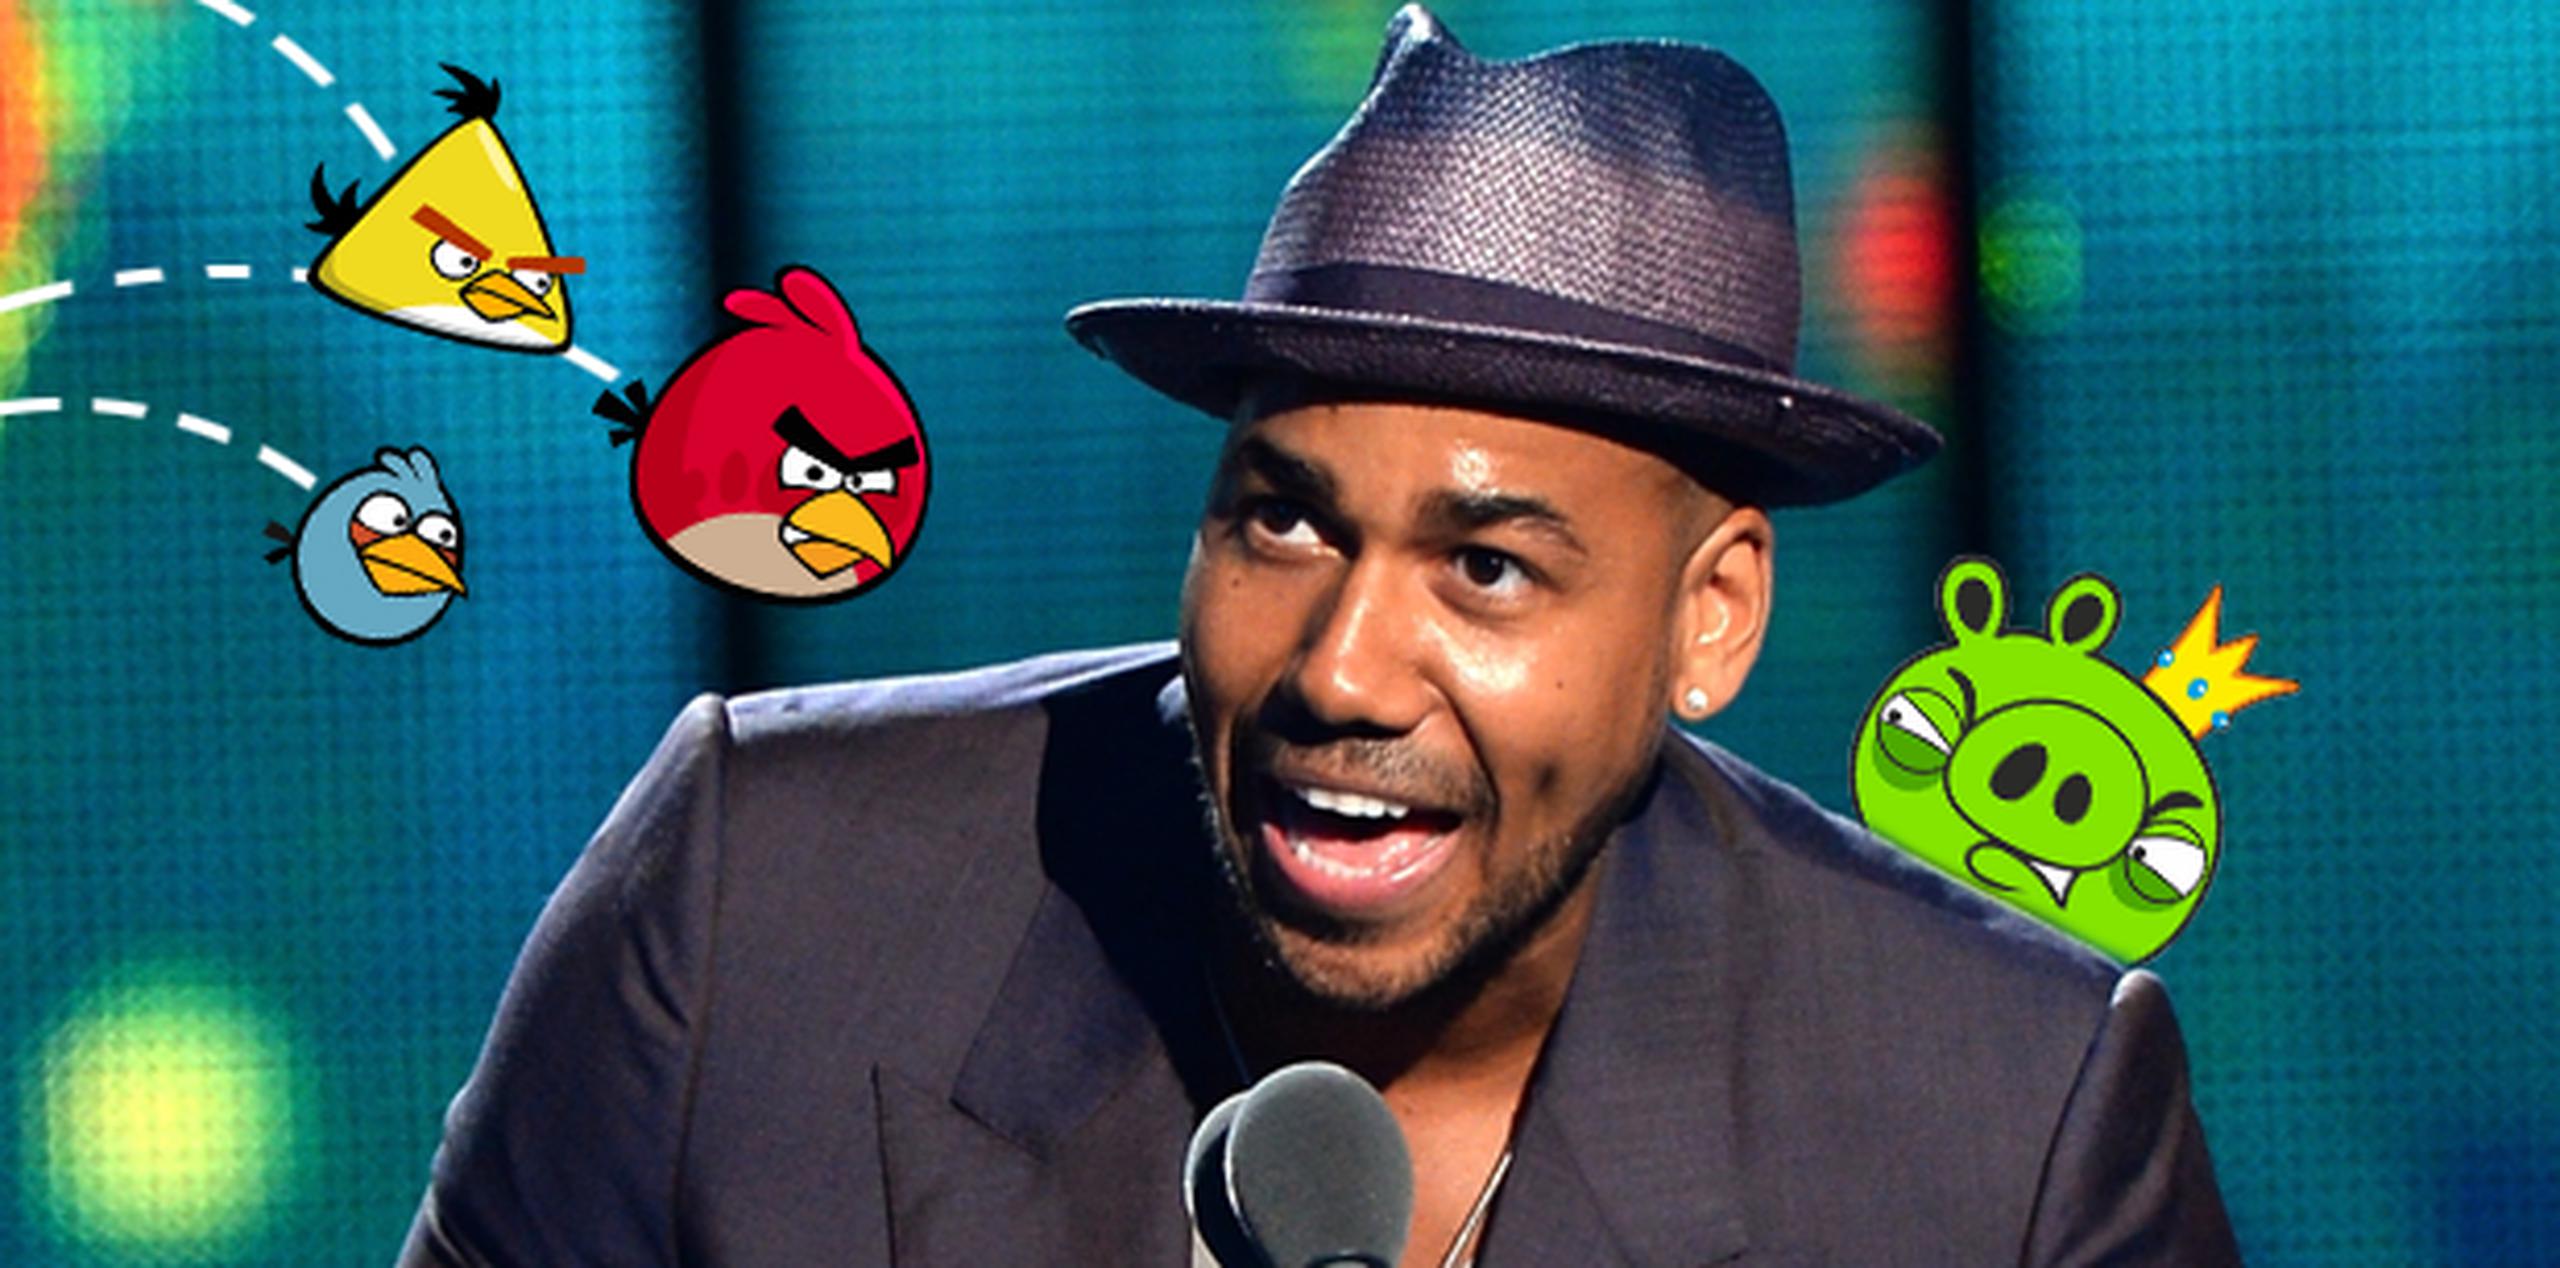 Las diferentes versiones de "Angry Birds" acumulan más de 1,700 millones de descargas desde que se comercializó por primera vez en 2009. (Archivo)